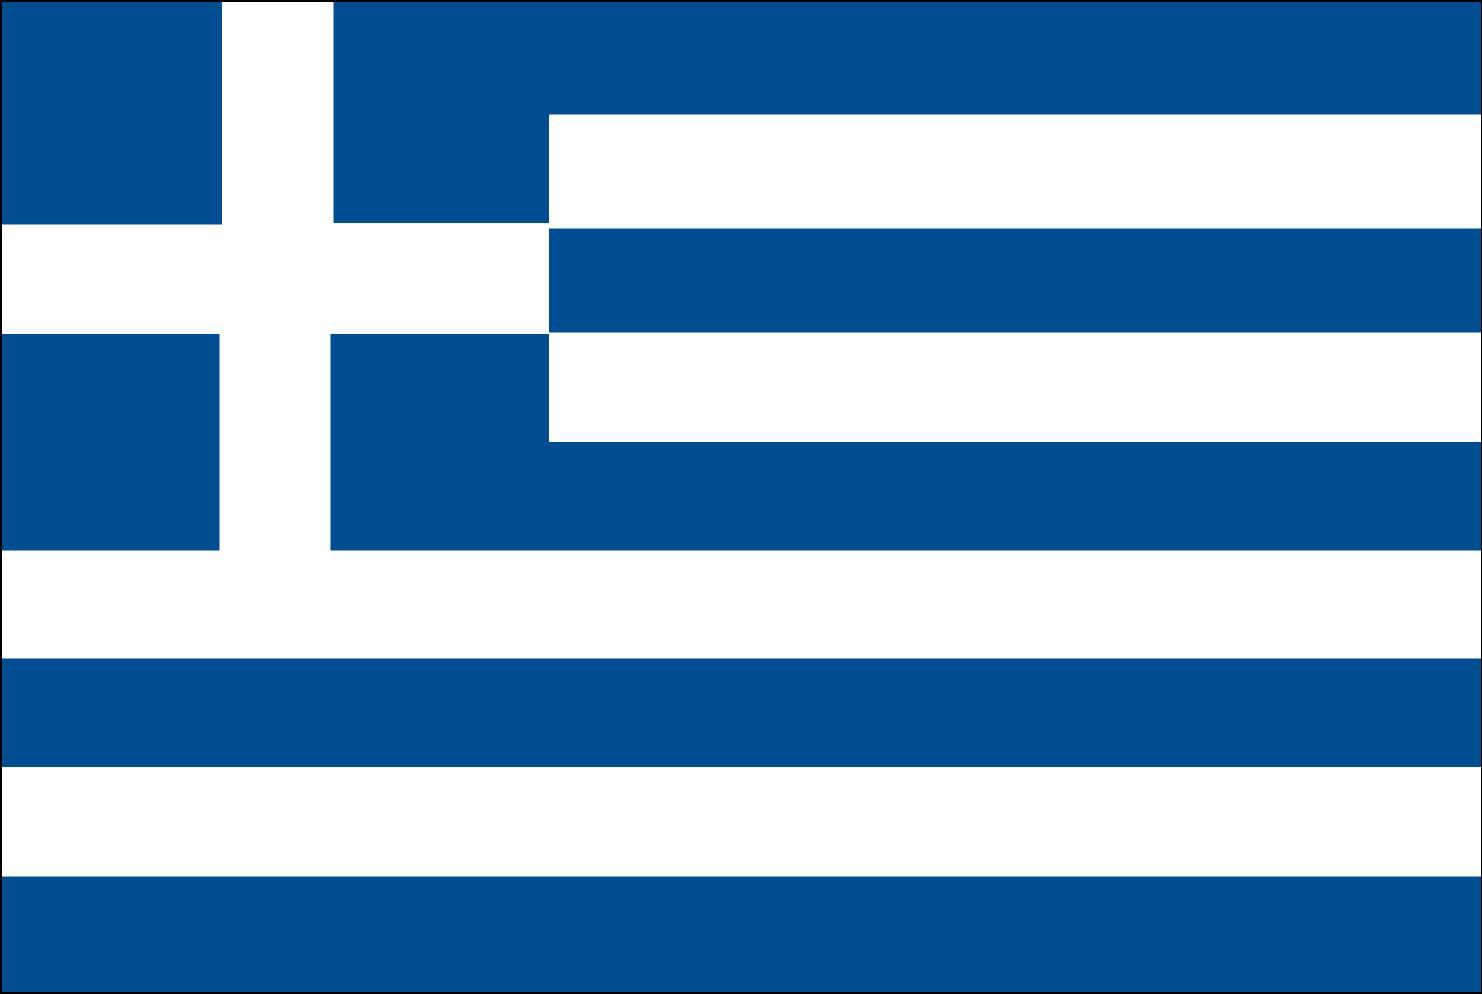 Sobre la irresponsable Grecia